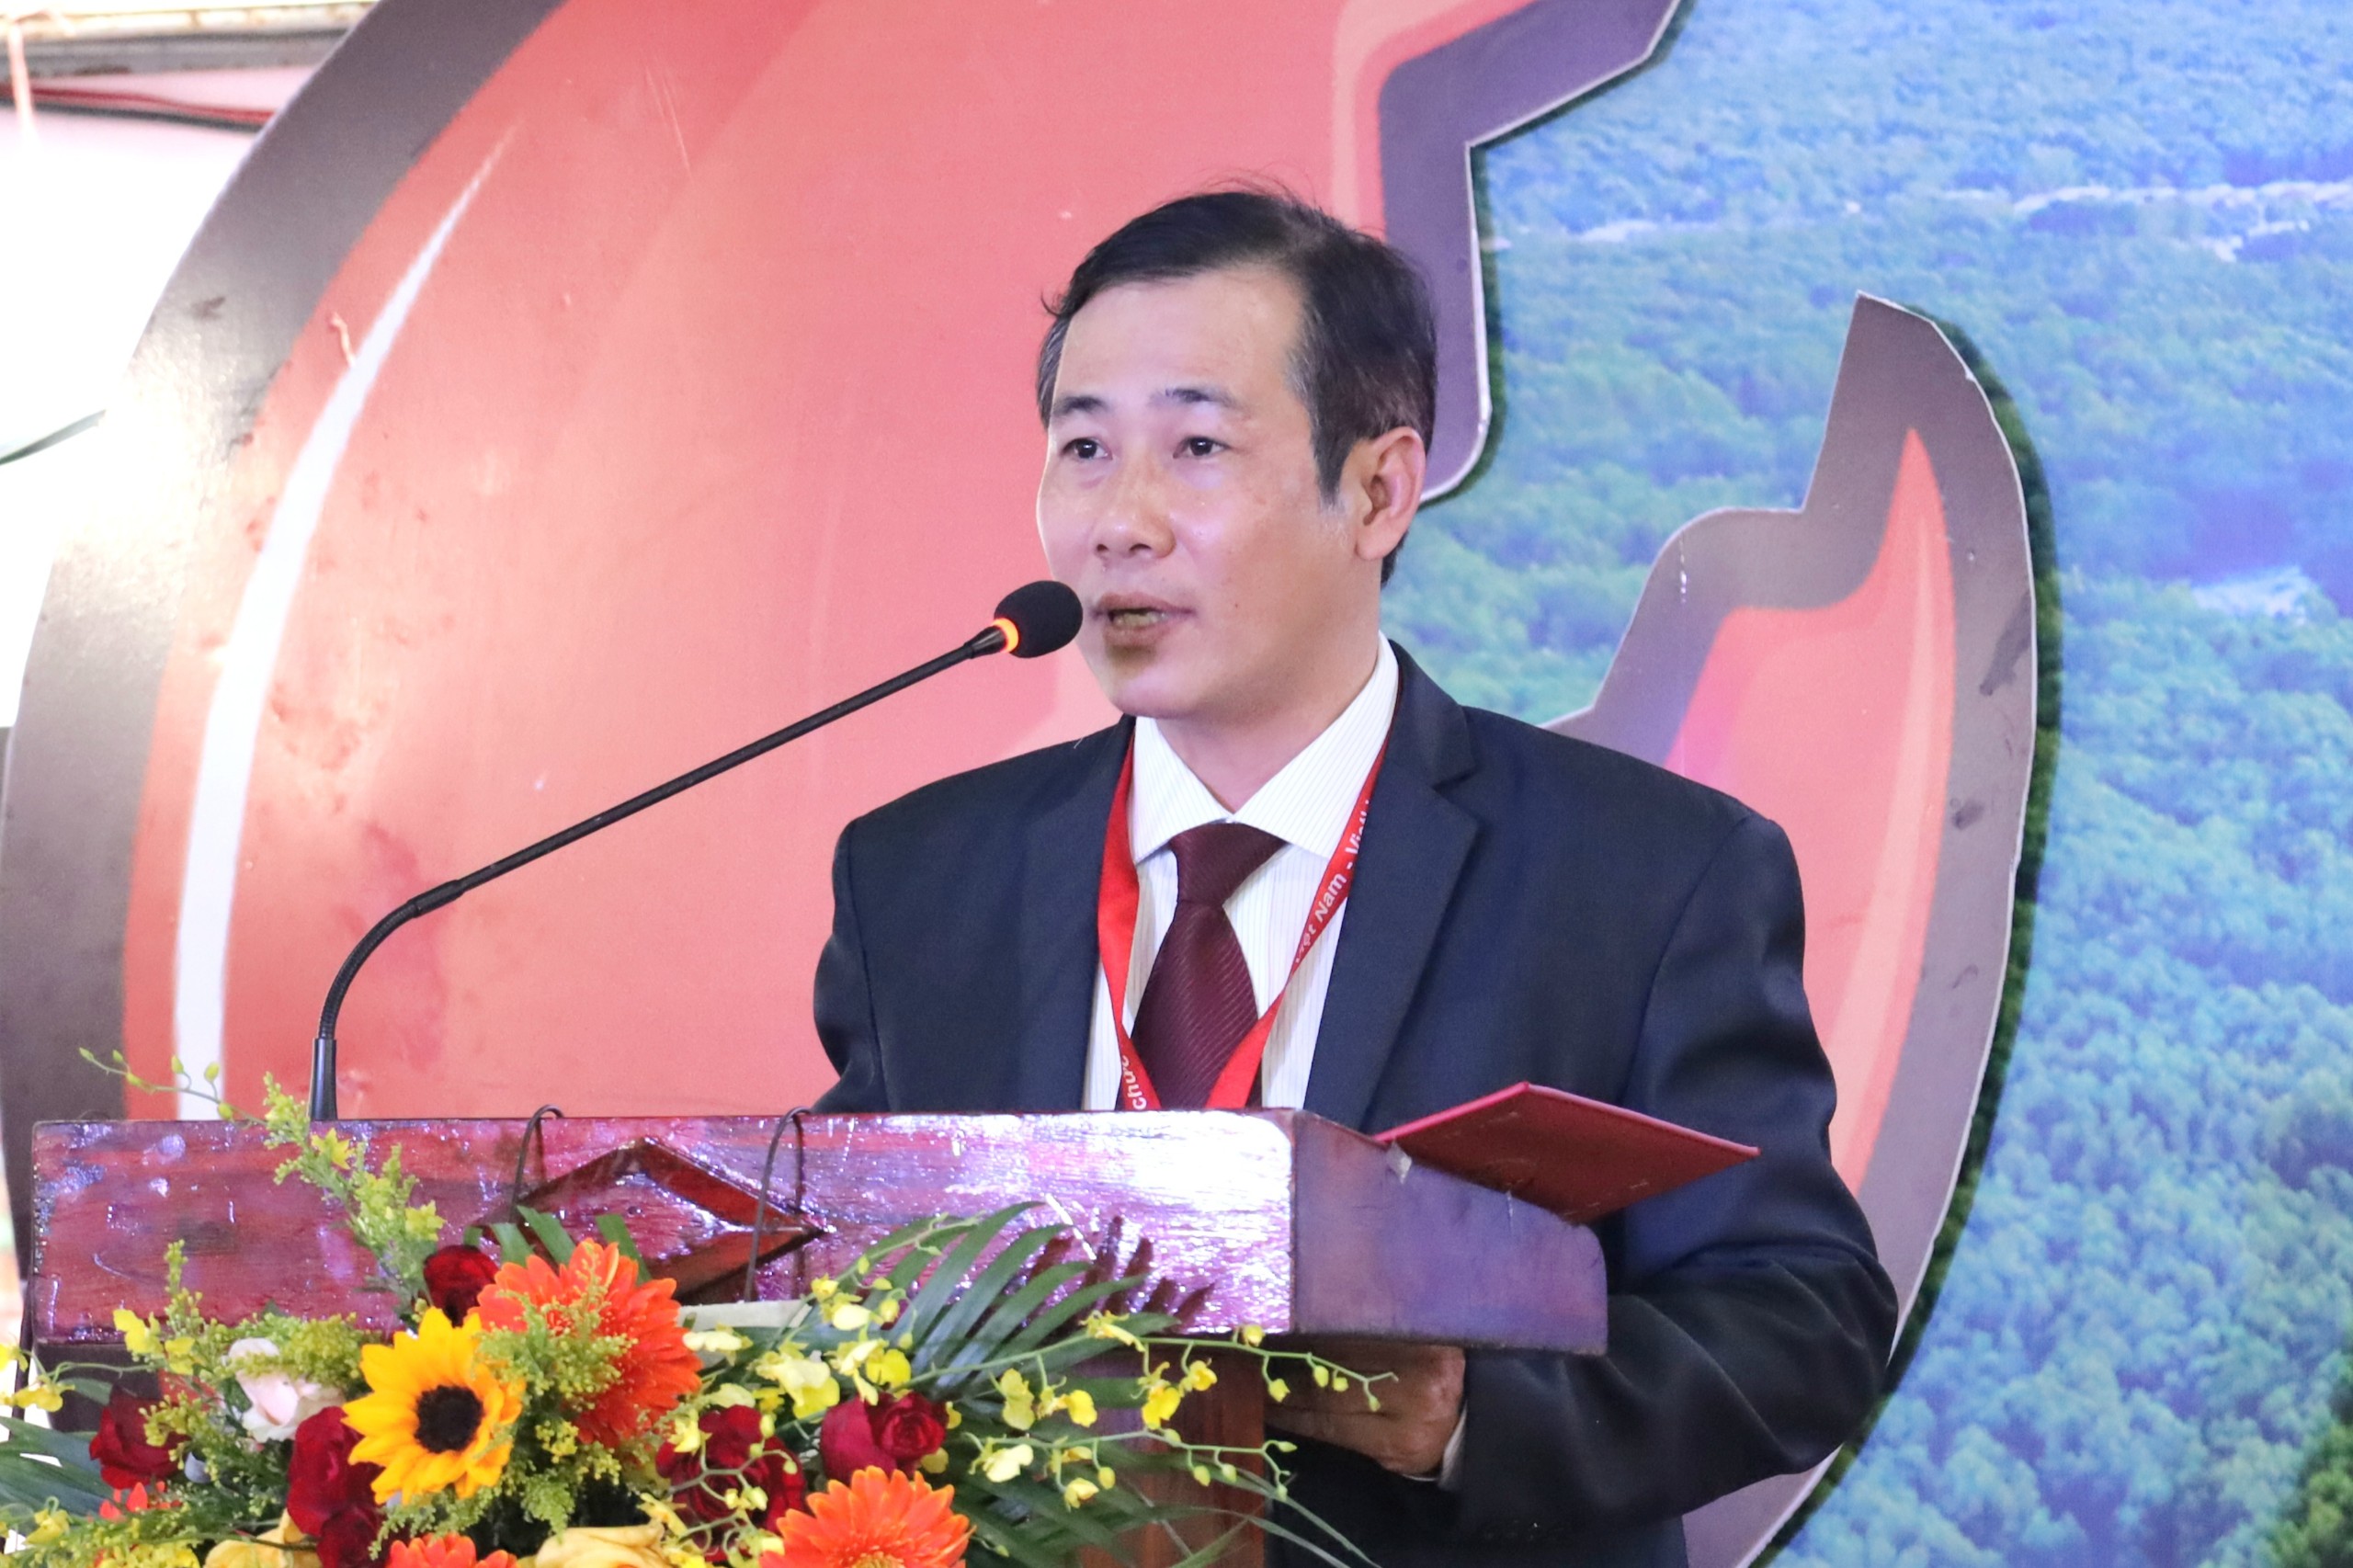 Ông Dương Duy Lâm Viên - Tổng thư ký TW Hội Kỷ lục gia Việt Nam, Viện trưởng Viện Kỷ lục Việt Nam (VietKings) công bố thư ủy quyền của Tổ chức Kỷ lục Châu Á.